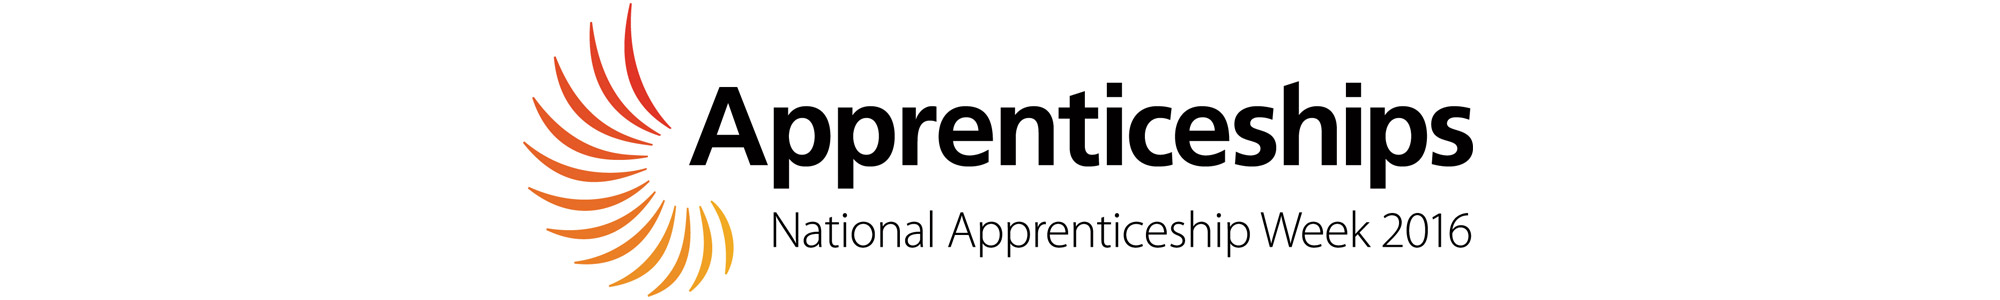 apprentice-blog-header